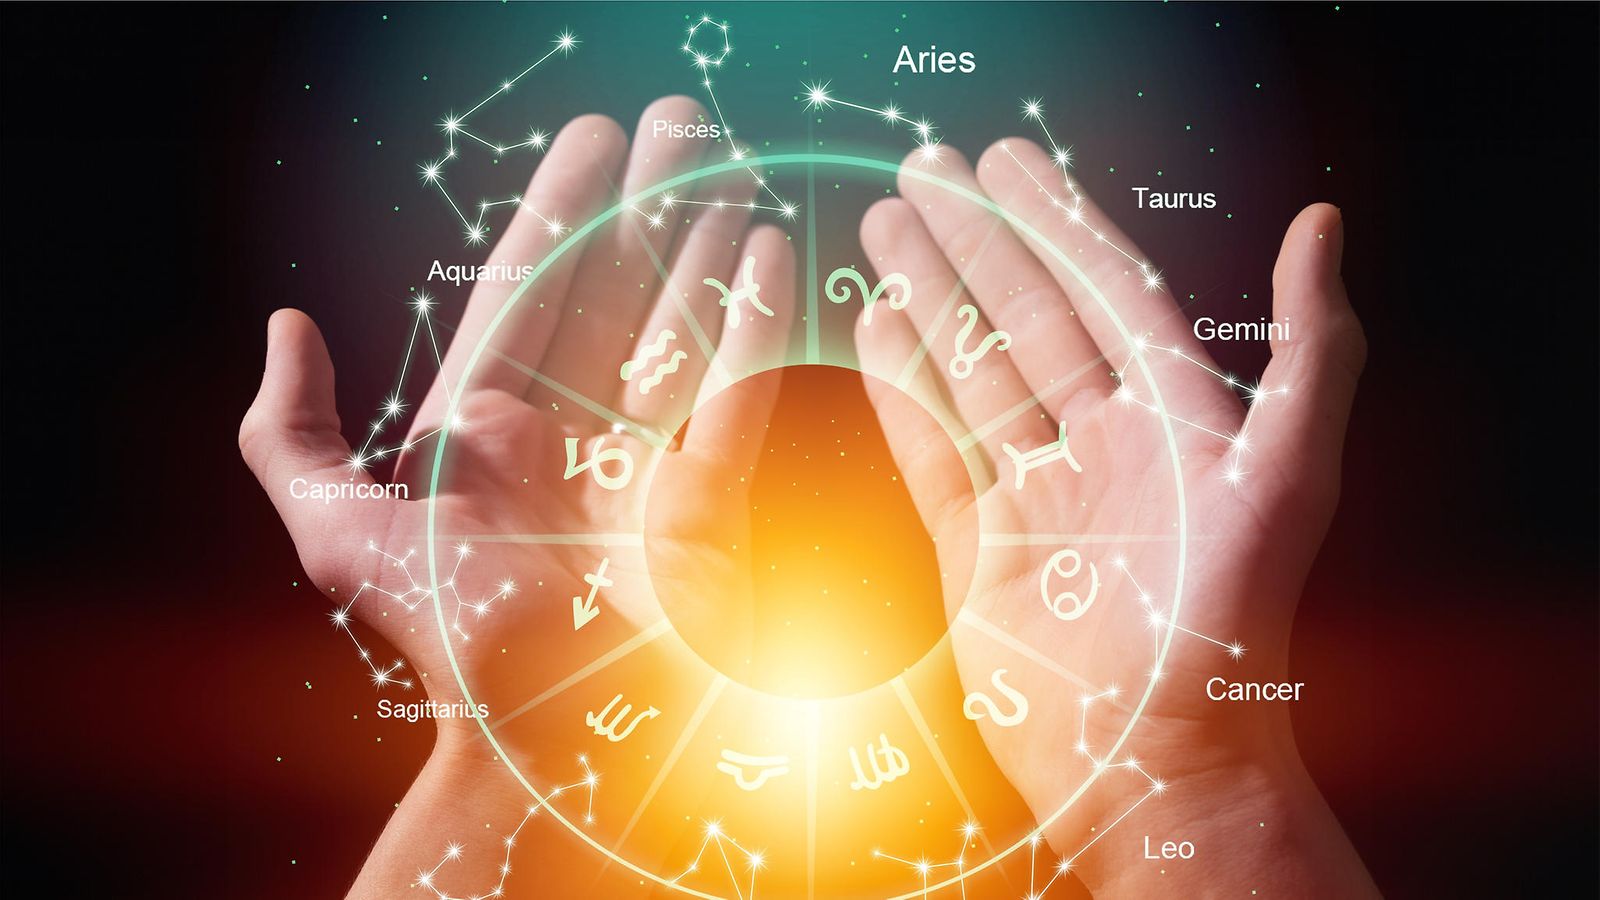 Narsismi ja vähäinen älykkyys ennustavat astrologiaan uskomista -  